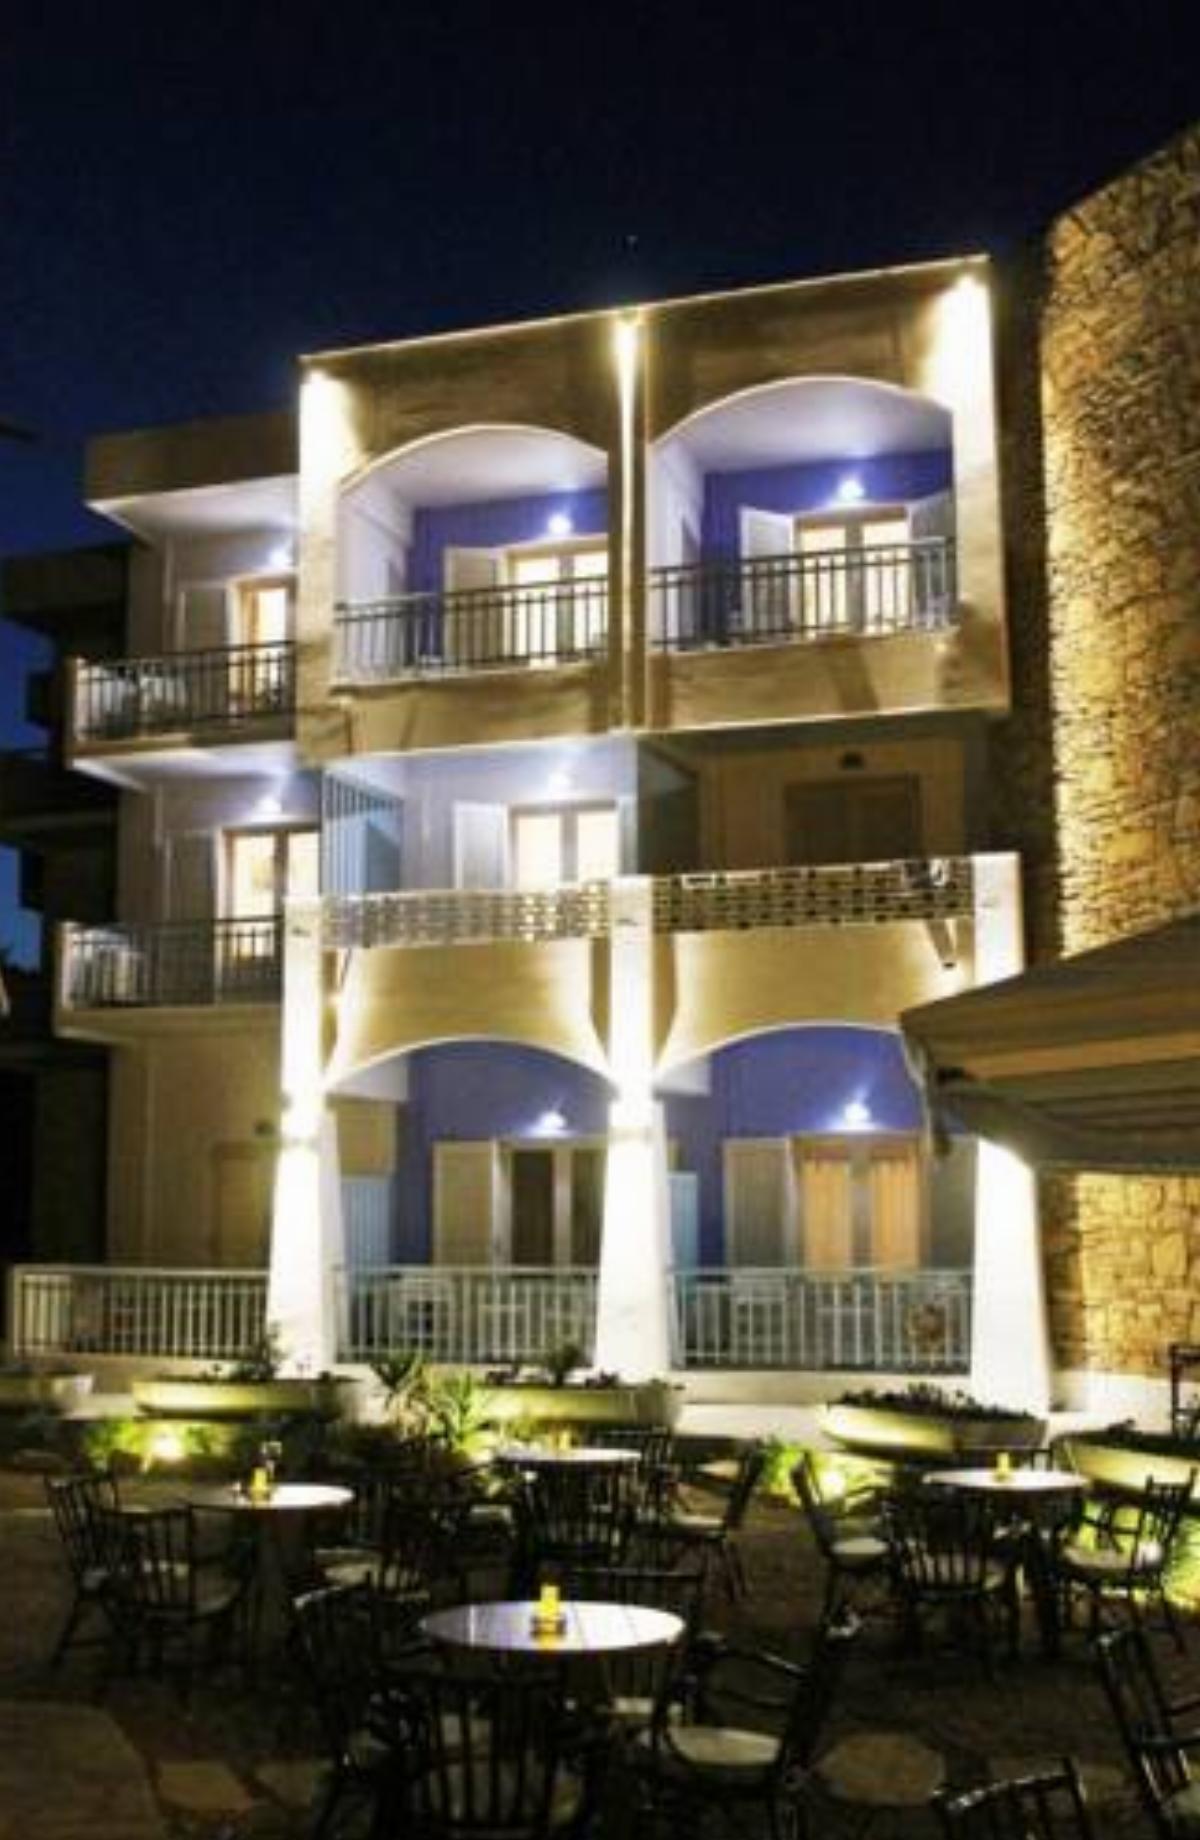 Alea Mare Hotel Hotel Alinda Greece